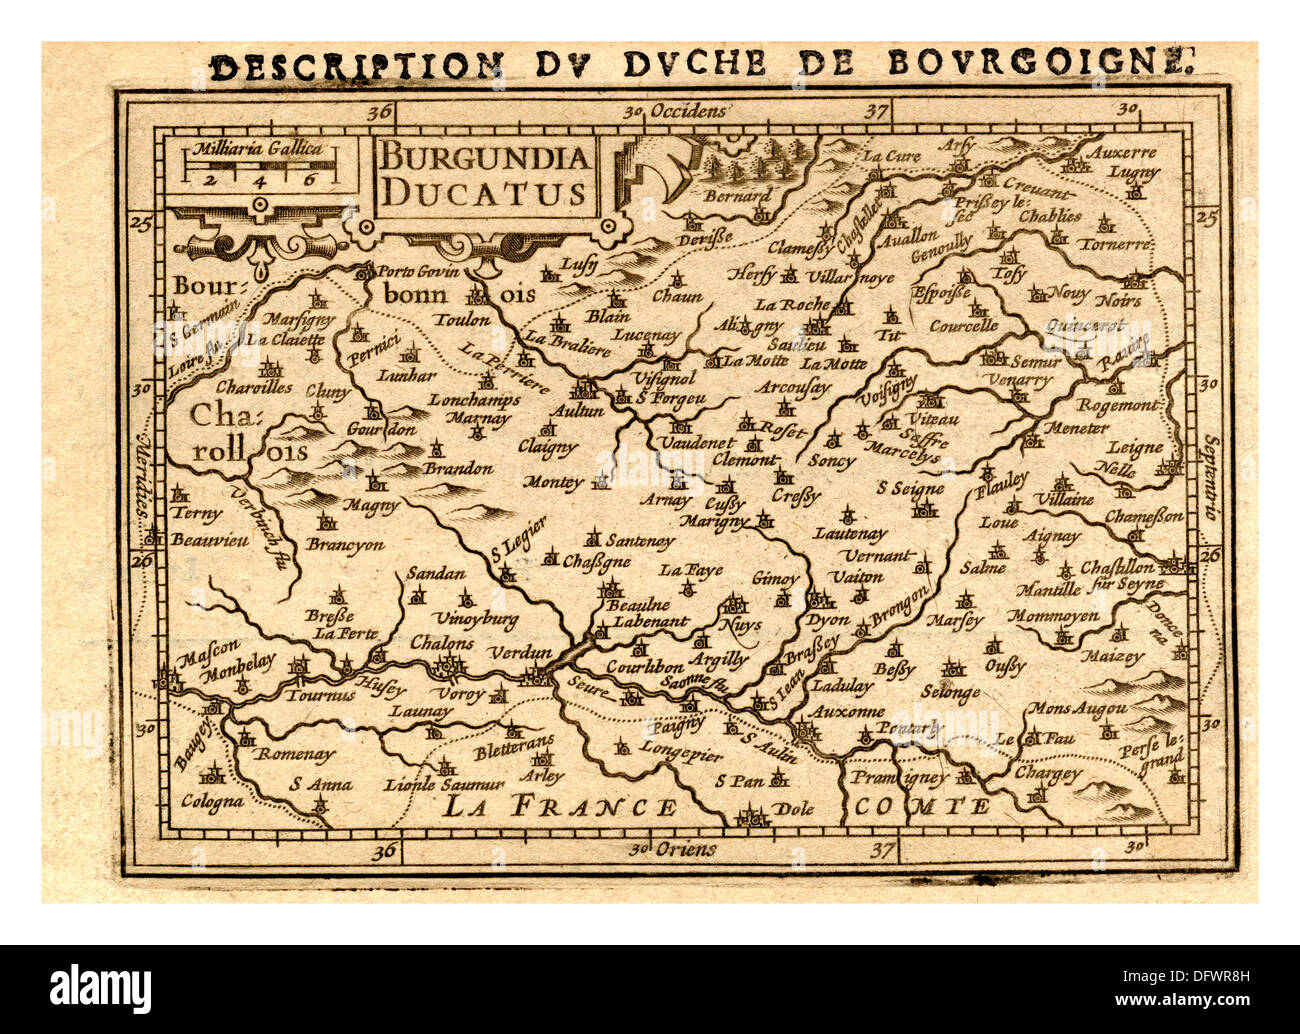 Carte historique du duché de Bourgogne en 1588 par Abrham Ortelius cartographe Belge Banque D'Images